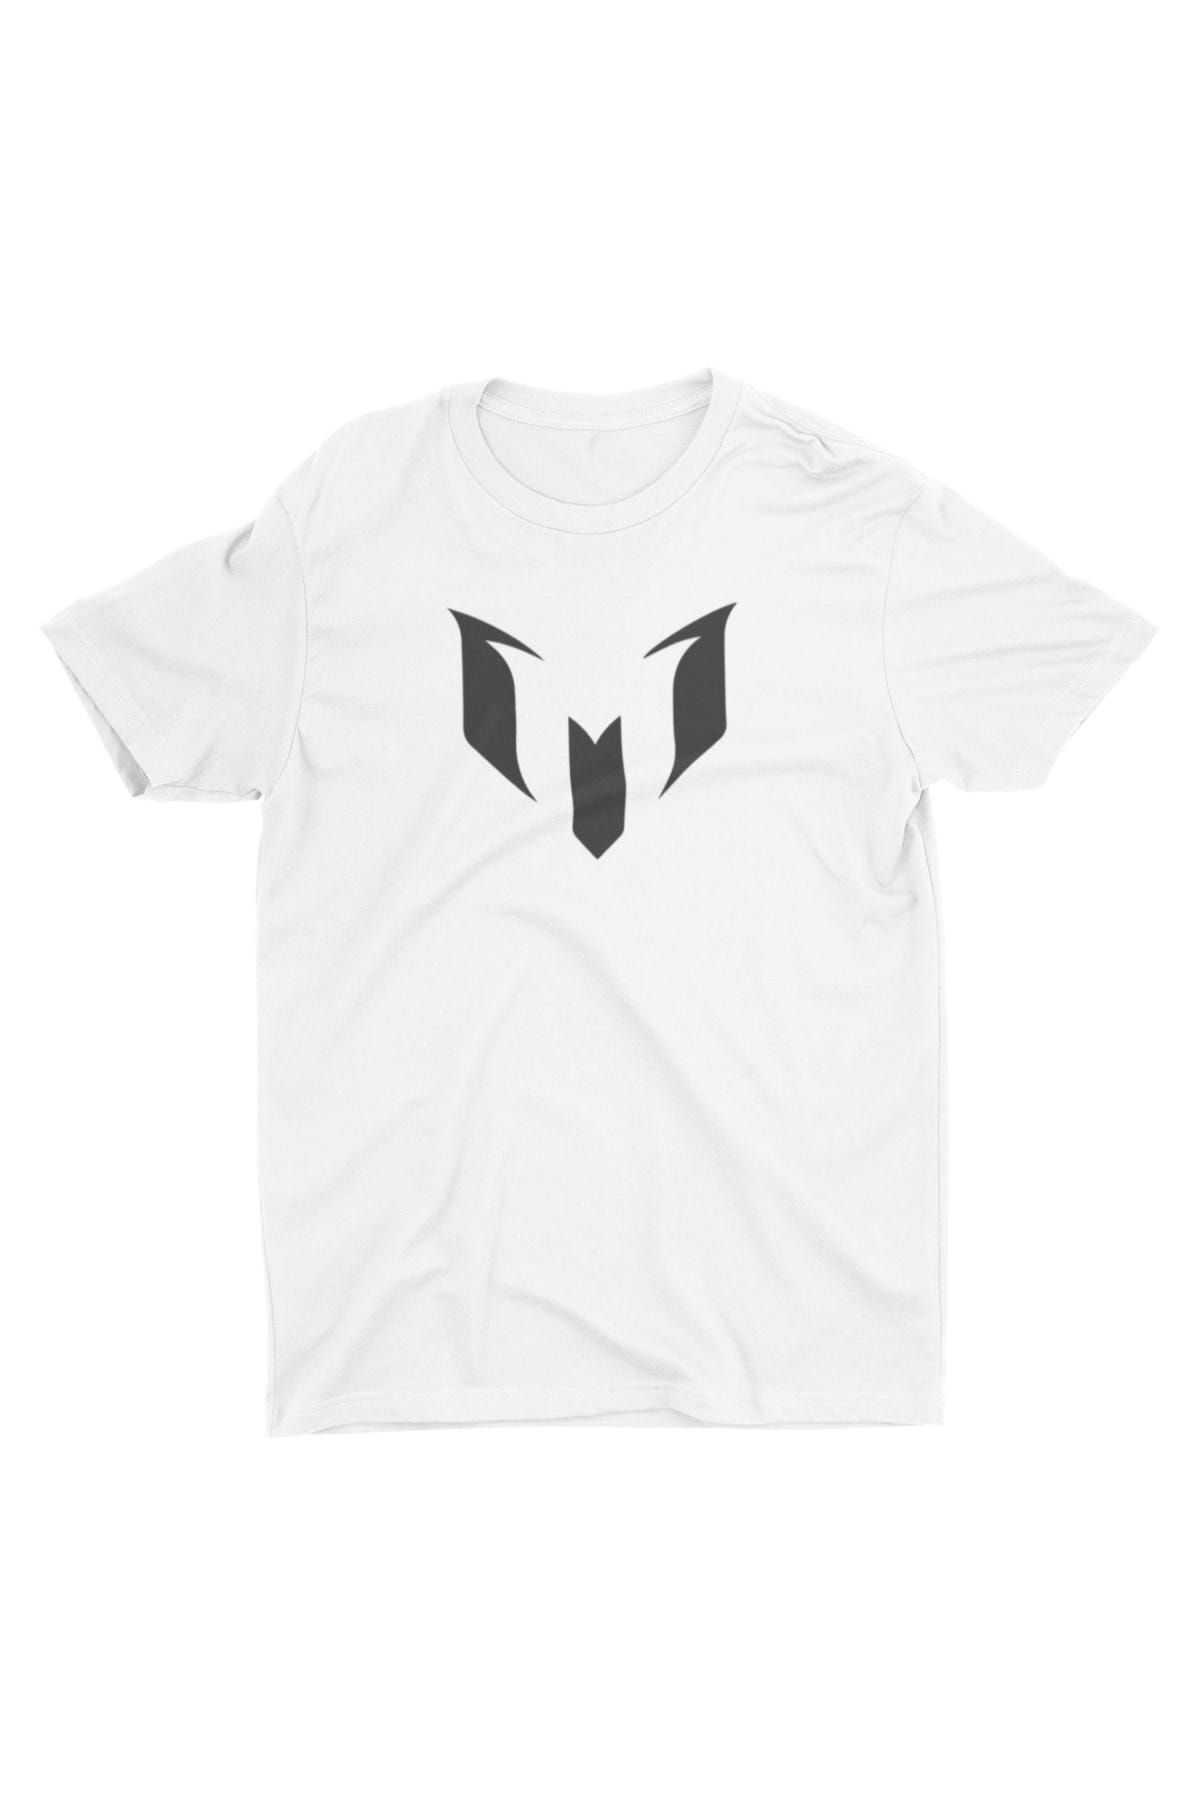 Bubus Unisex Beyaz Lionel Messi Logolu Tişört